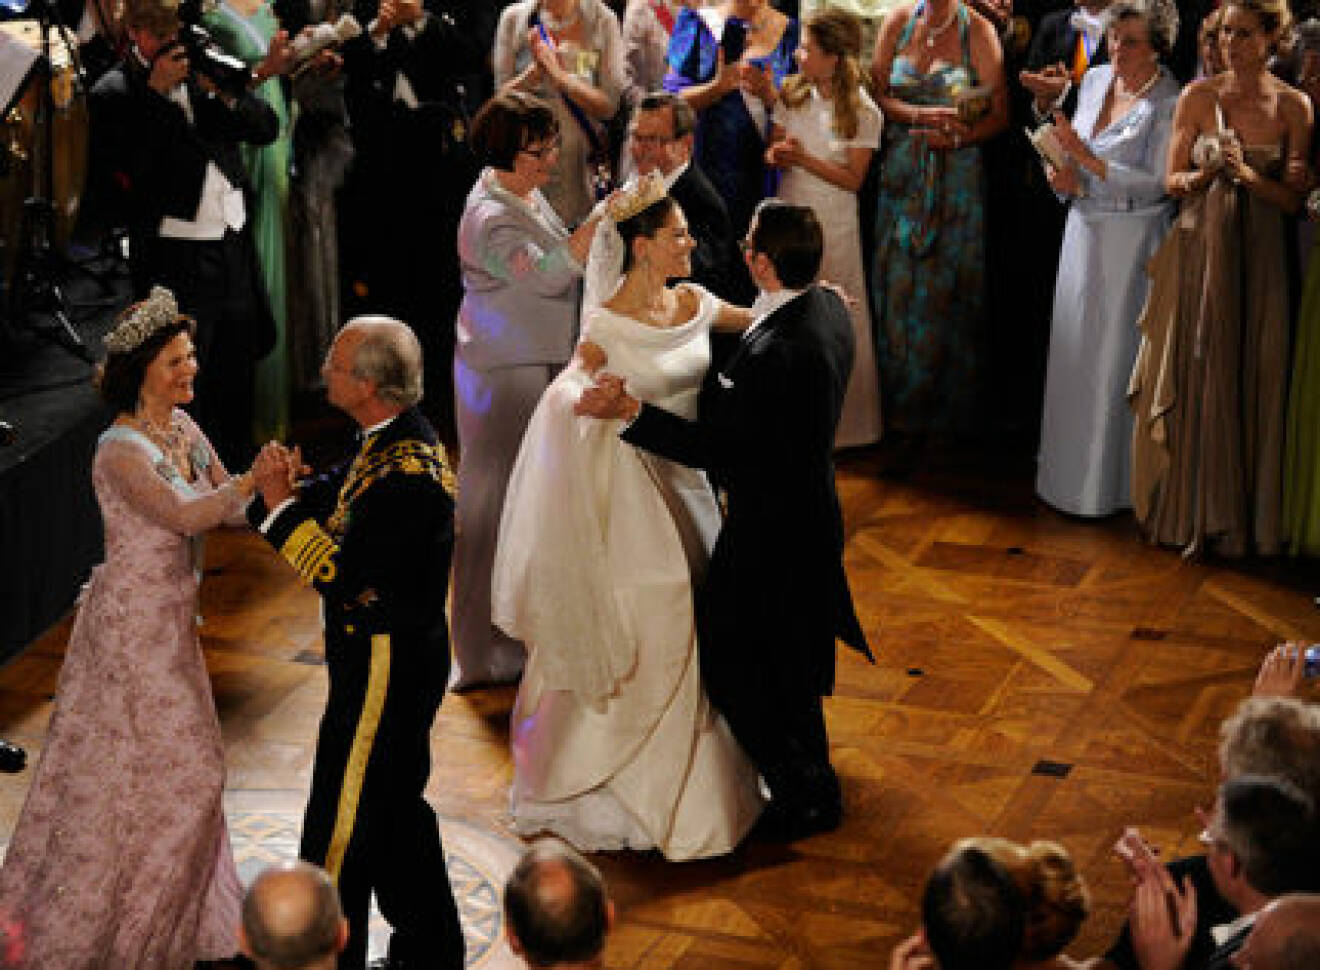 Kungen, Silvia, Olle och Ewa Westling ger brudparet sällskap på dansgolvet.